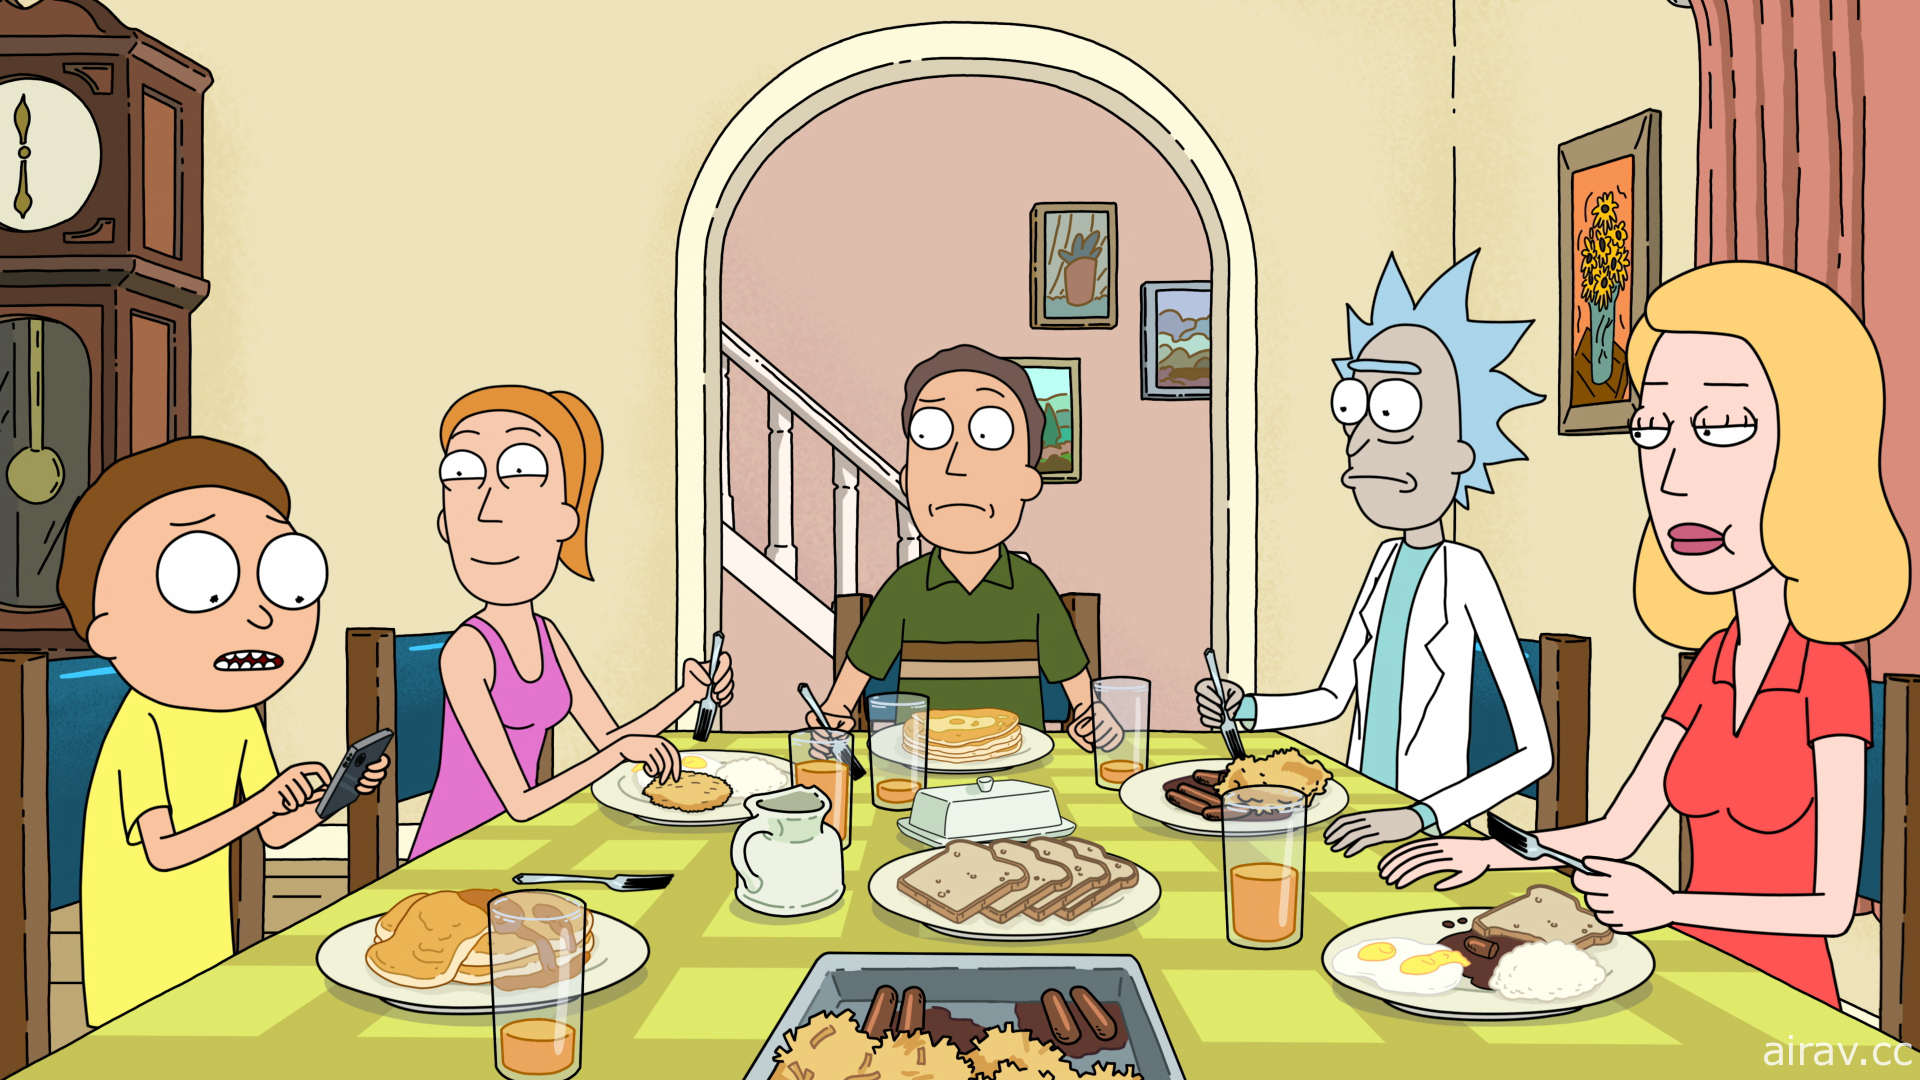 《瑞克和莫蒂》动画 1 至 4 季 10 月起于 HBO GO 正式上线